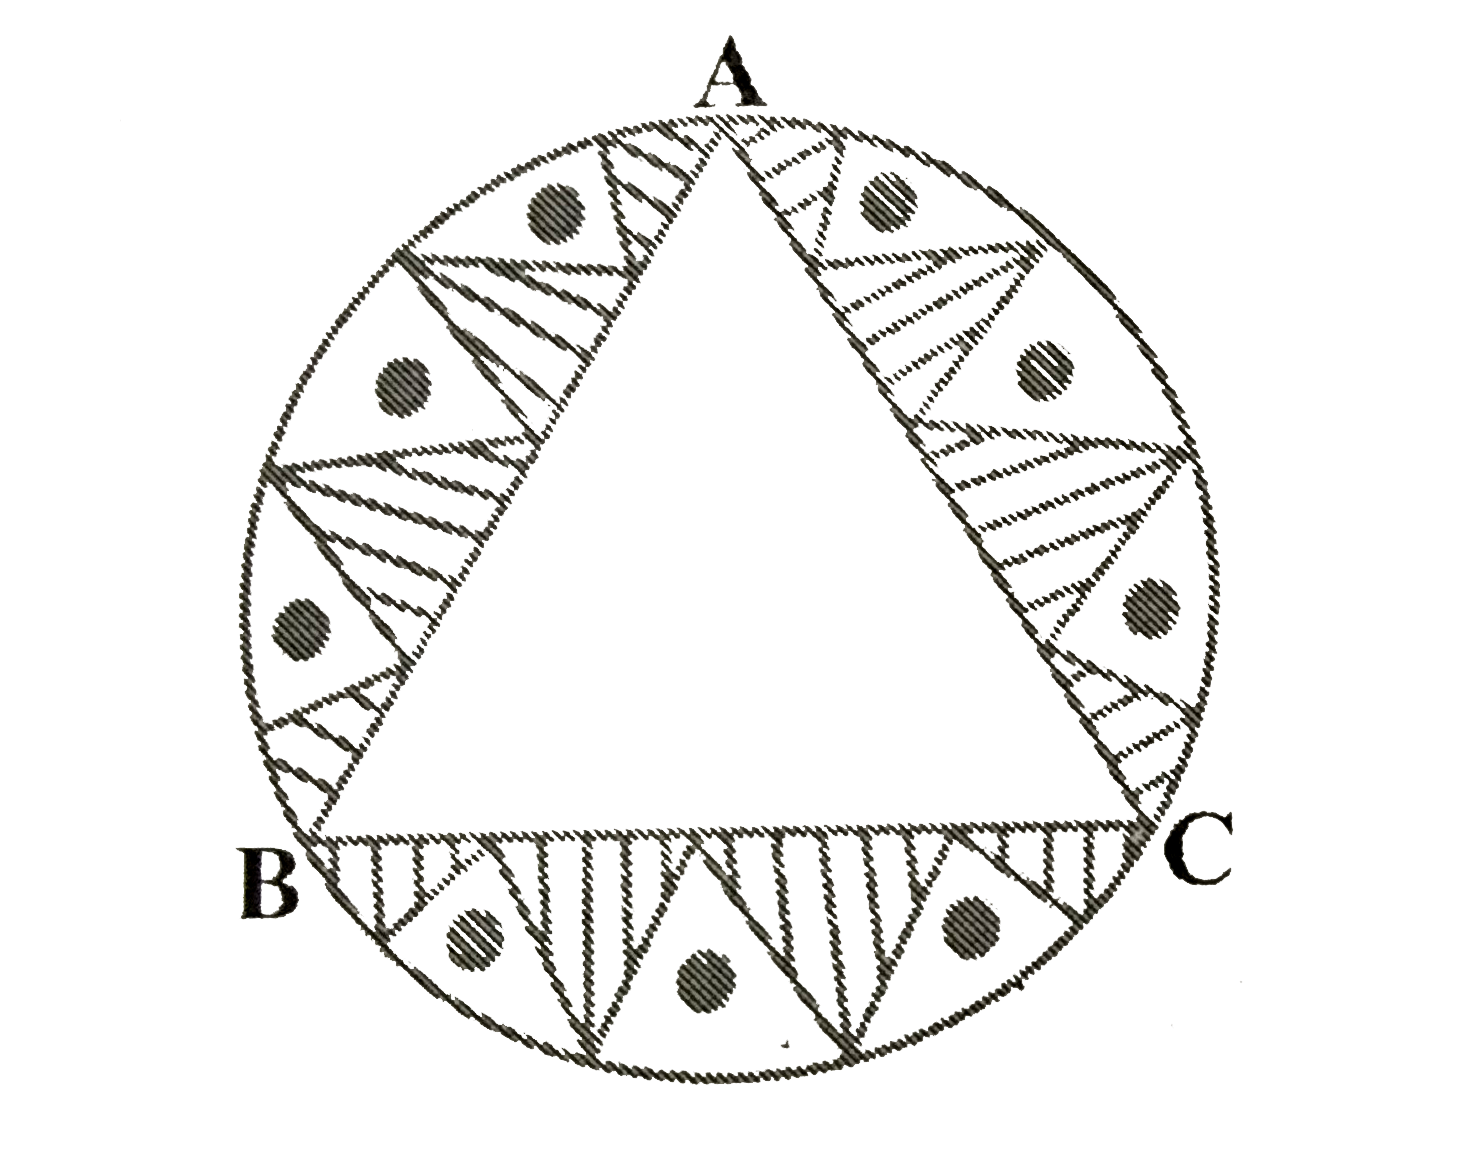 एक वृत्ताकार मेजपोश, जिसकी त्रिज्या 32 सेमी है में बीच में एक समबाहु त्रिभुज ABC छोड़ते हुए एक डिजाइन बना हुआ है जैसा कि आकृति में दिखाया गया है। इस डिजाइन का क्षेत्रफल ज्ञात कीजिए।